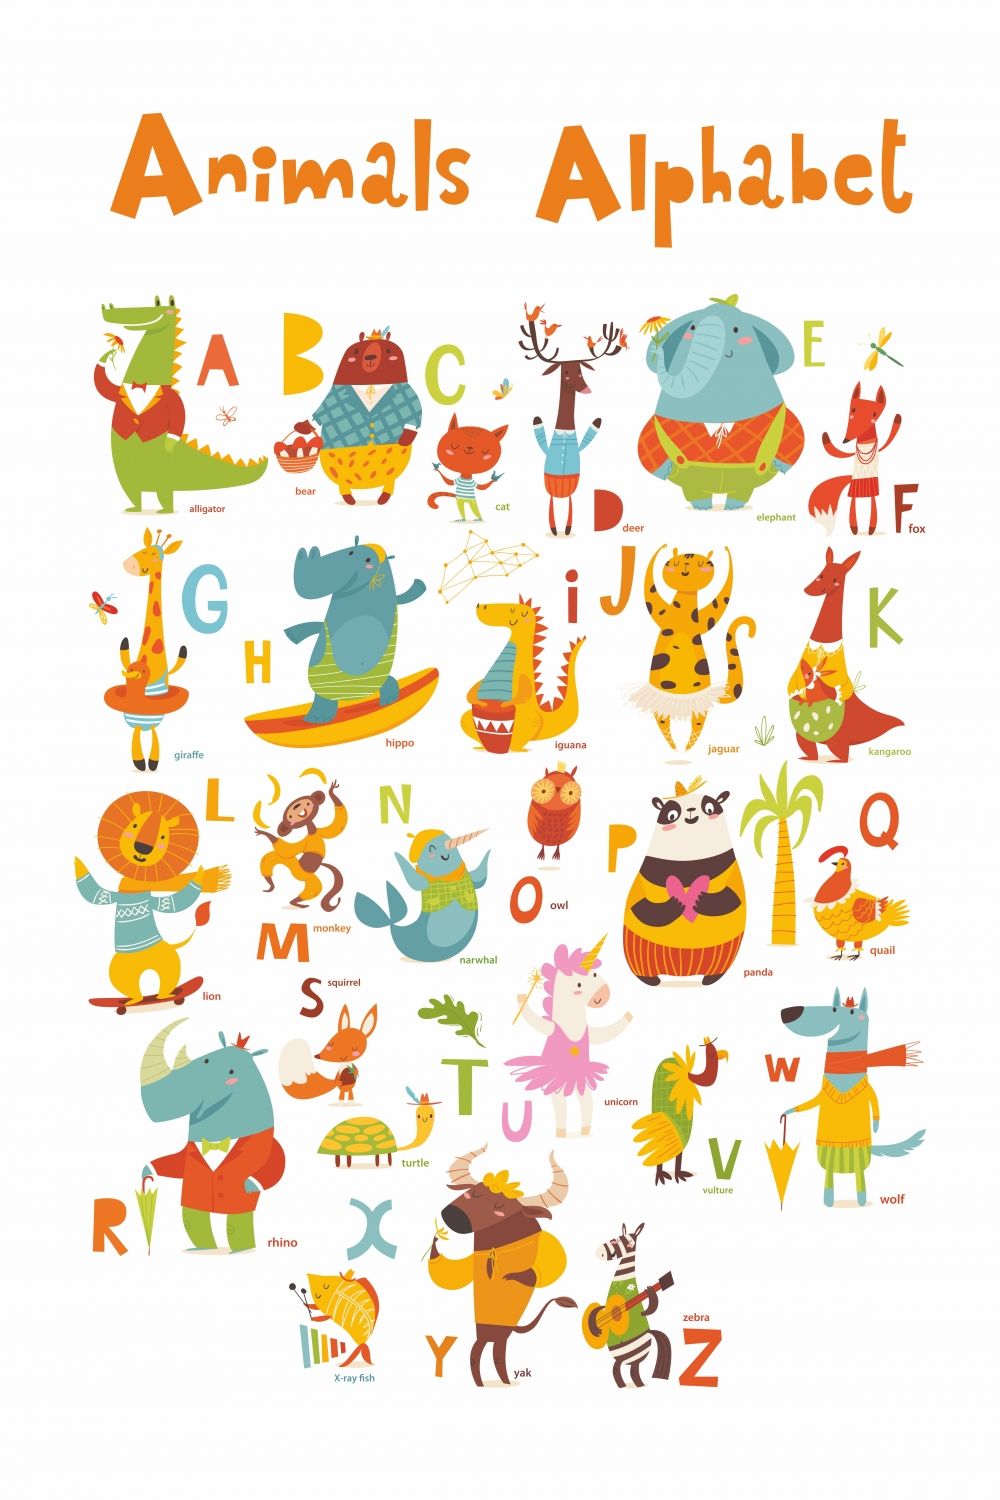 Постер "Animals Alphabet" от Интернет магазина Милота